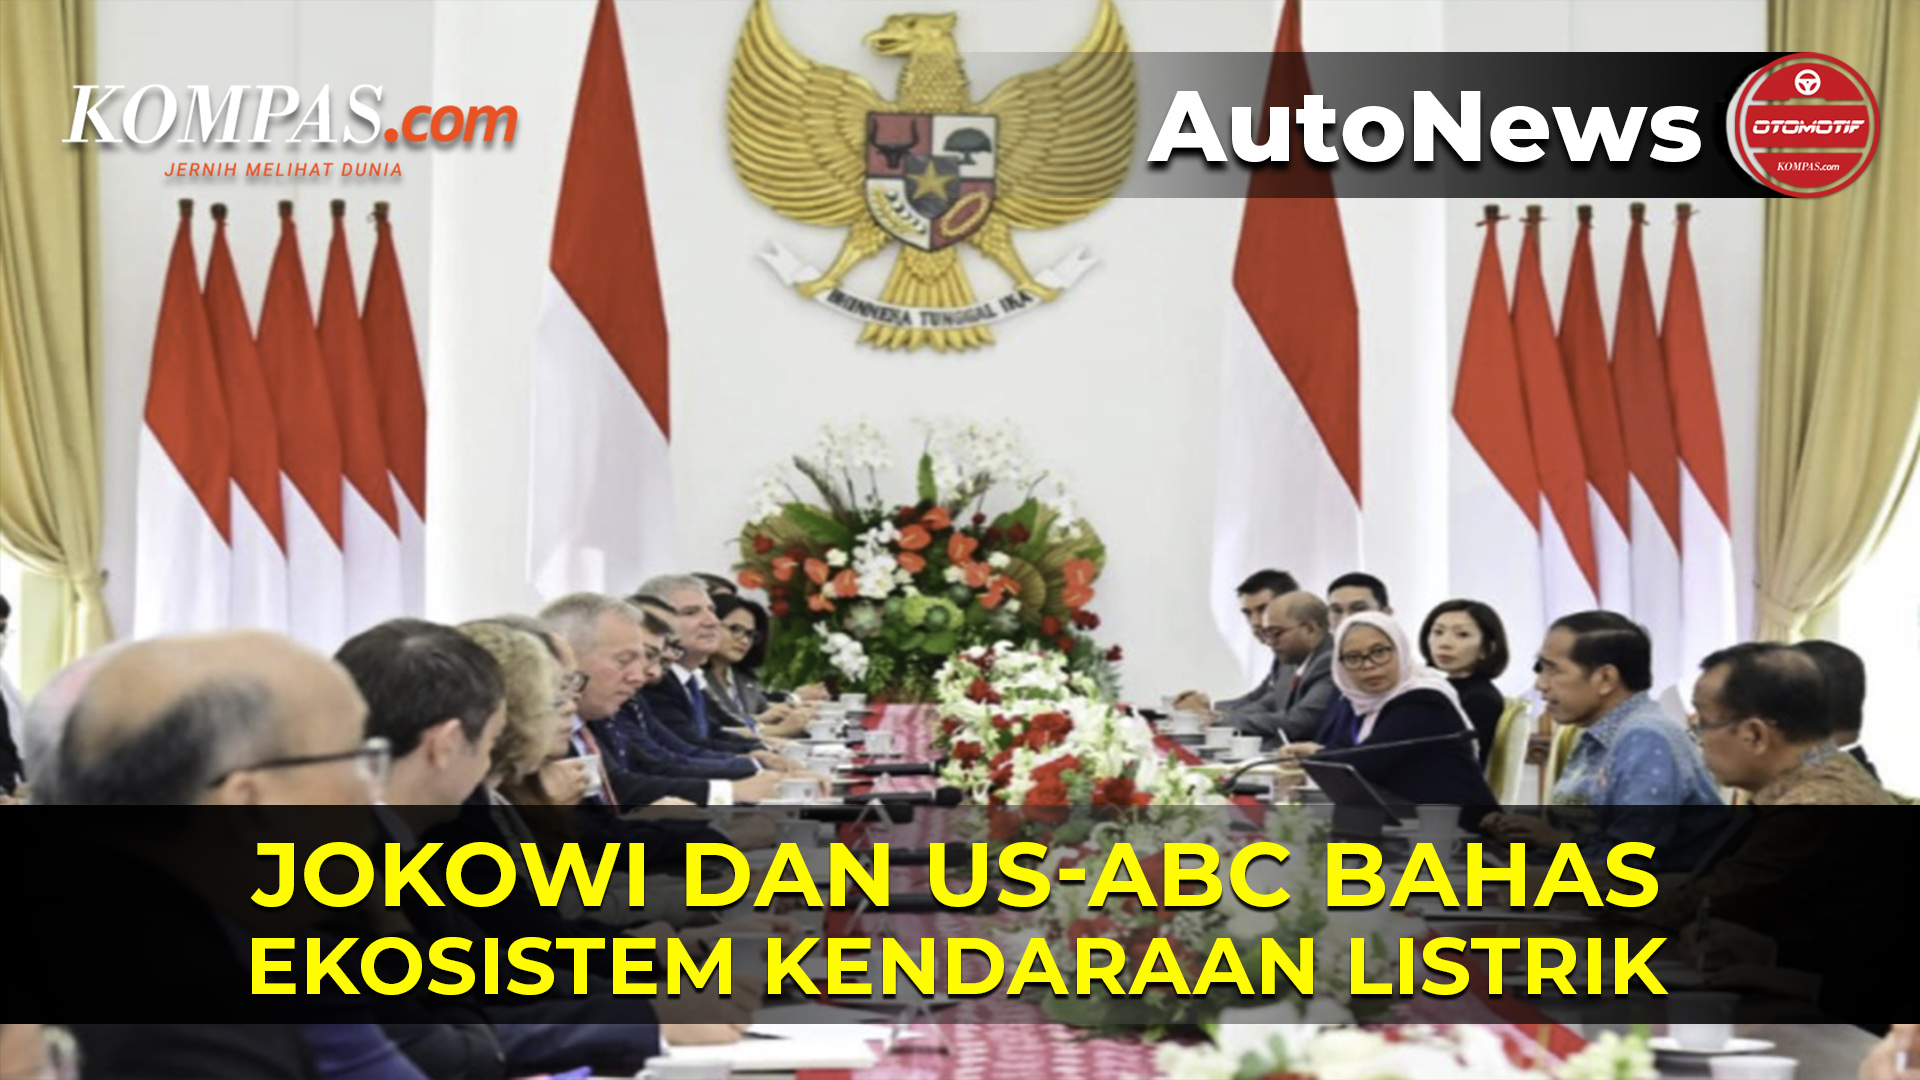 Jokowi Terima Kunjungan US-ABC, Bahas Ekosistem Kendaraan Listrik